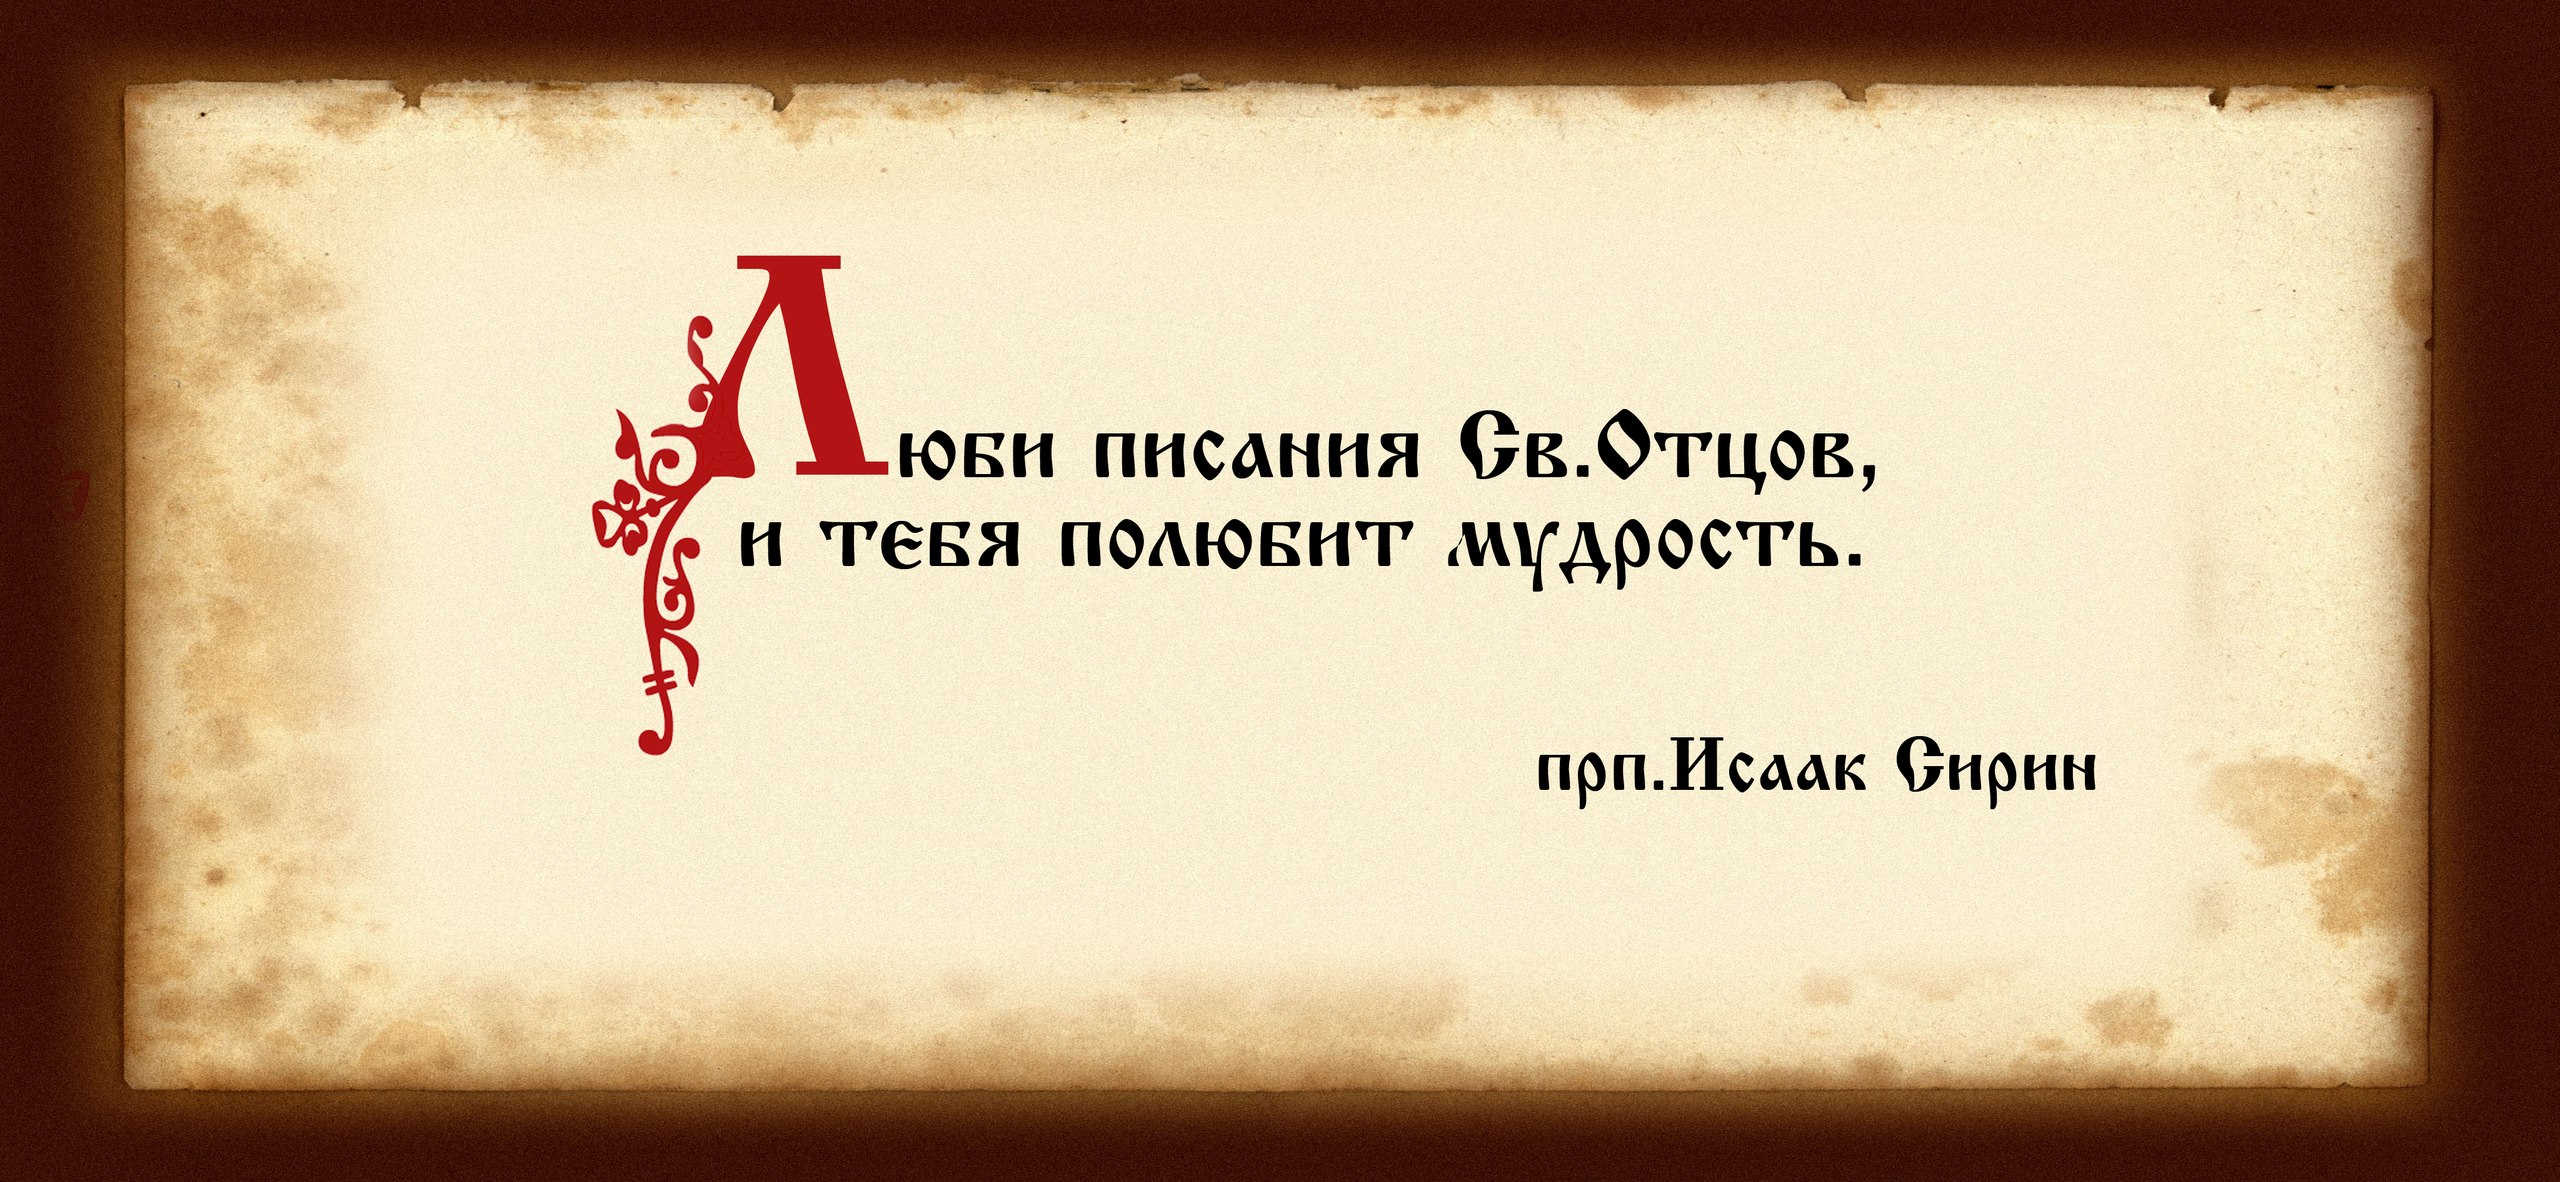 Православная литература - Православная библиотека